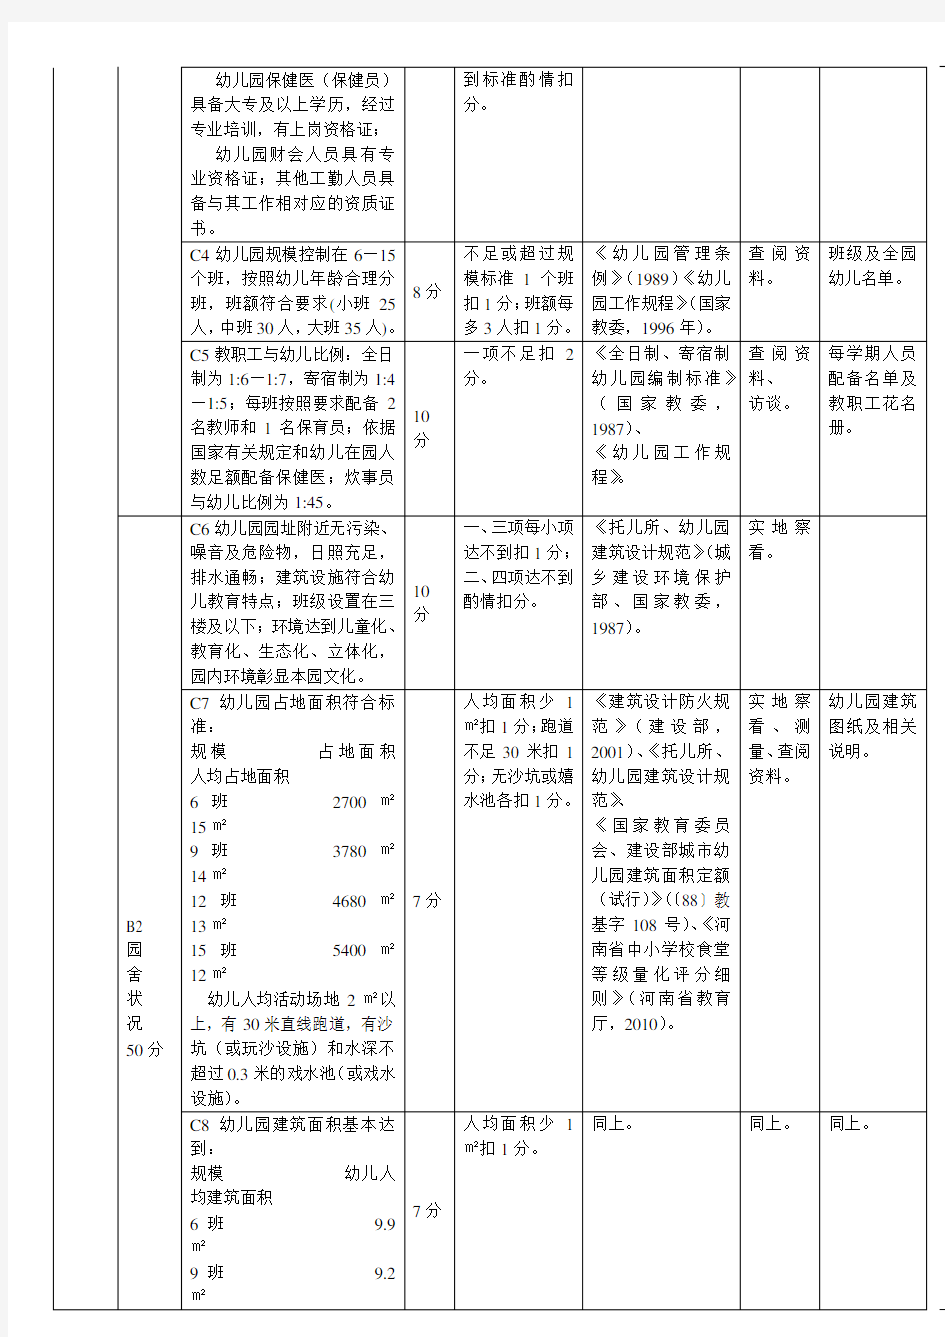 郑州市人民政府教育督导室关于印发郑州市幼儿园督导评估实施细则